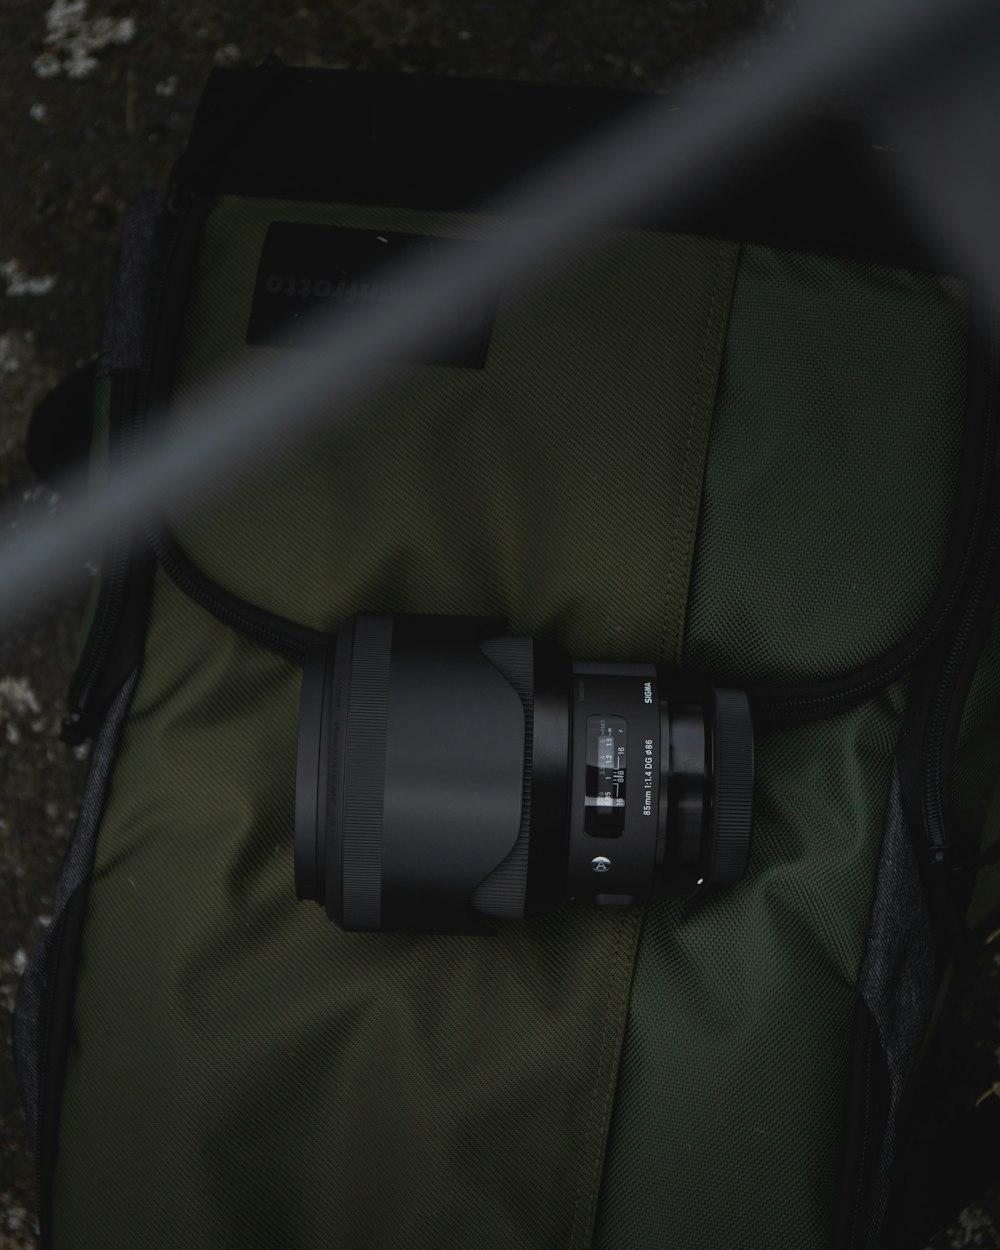 camera lens on olive green backpack